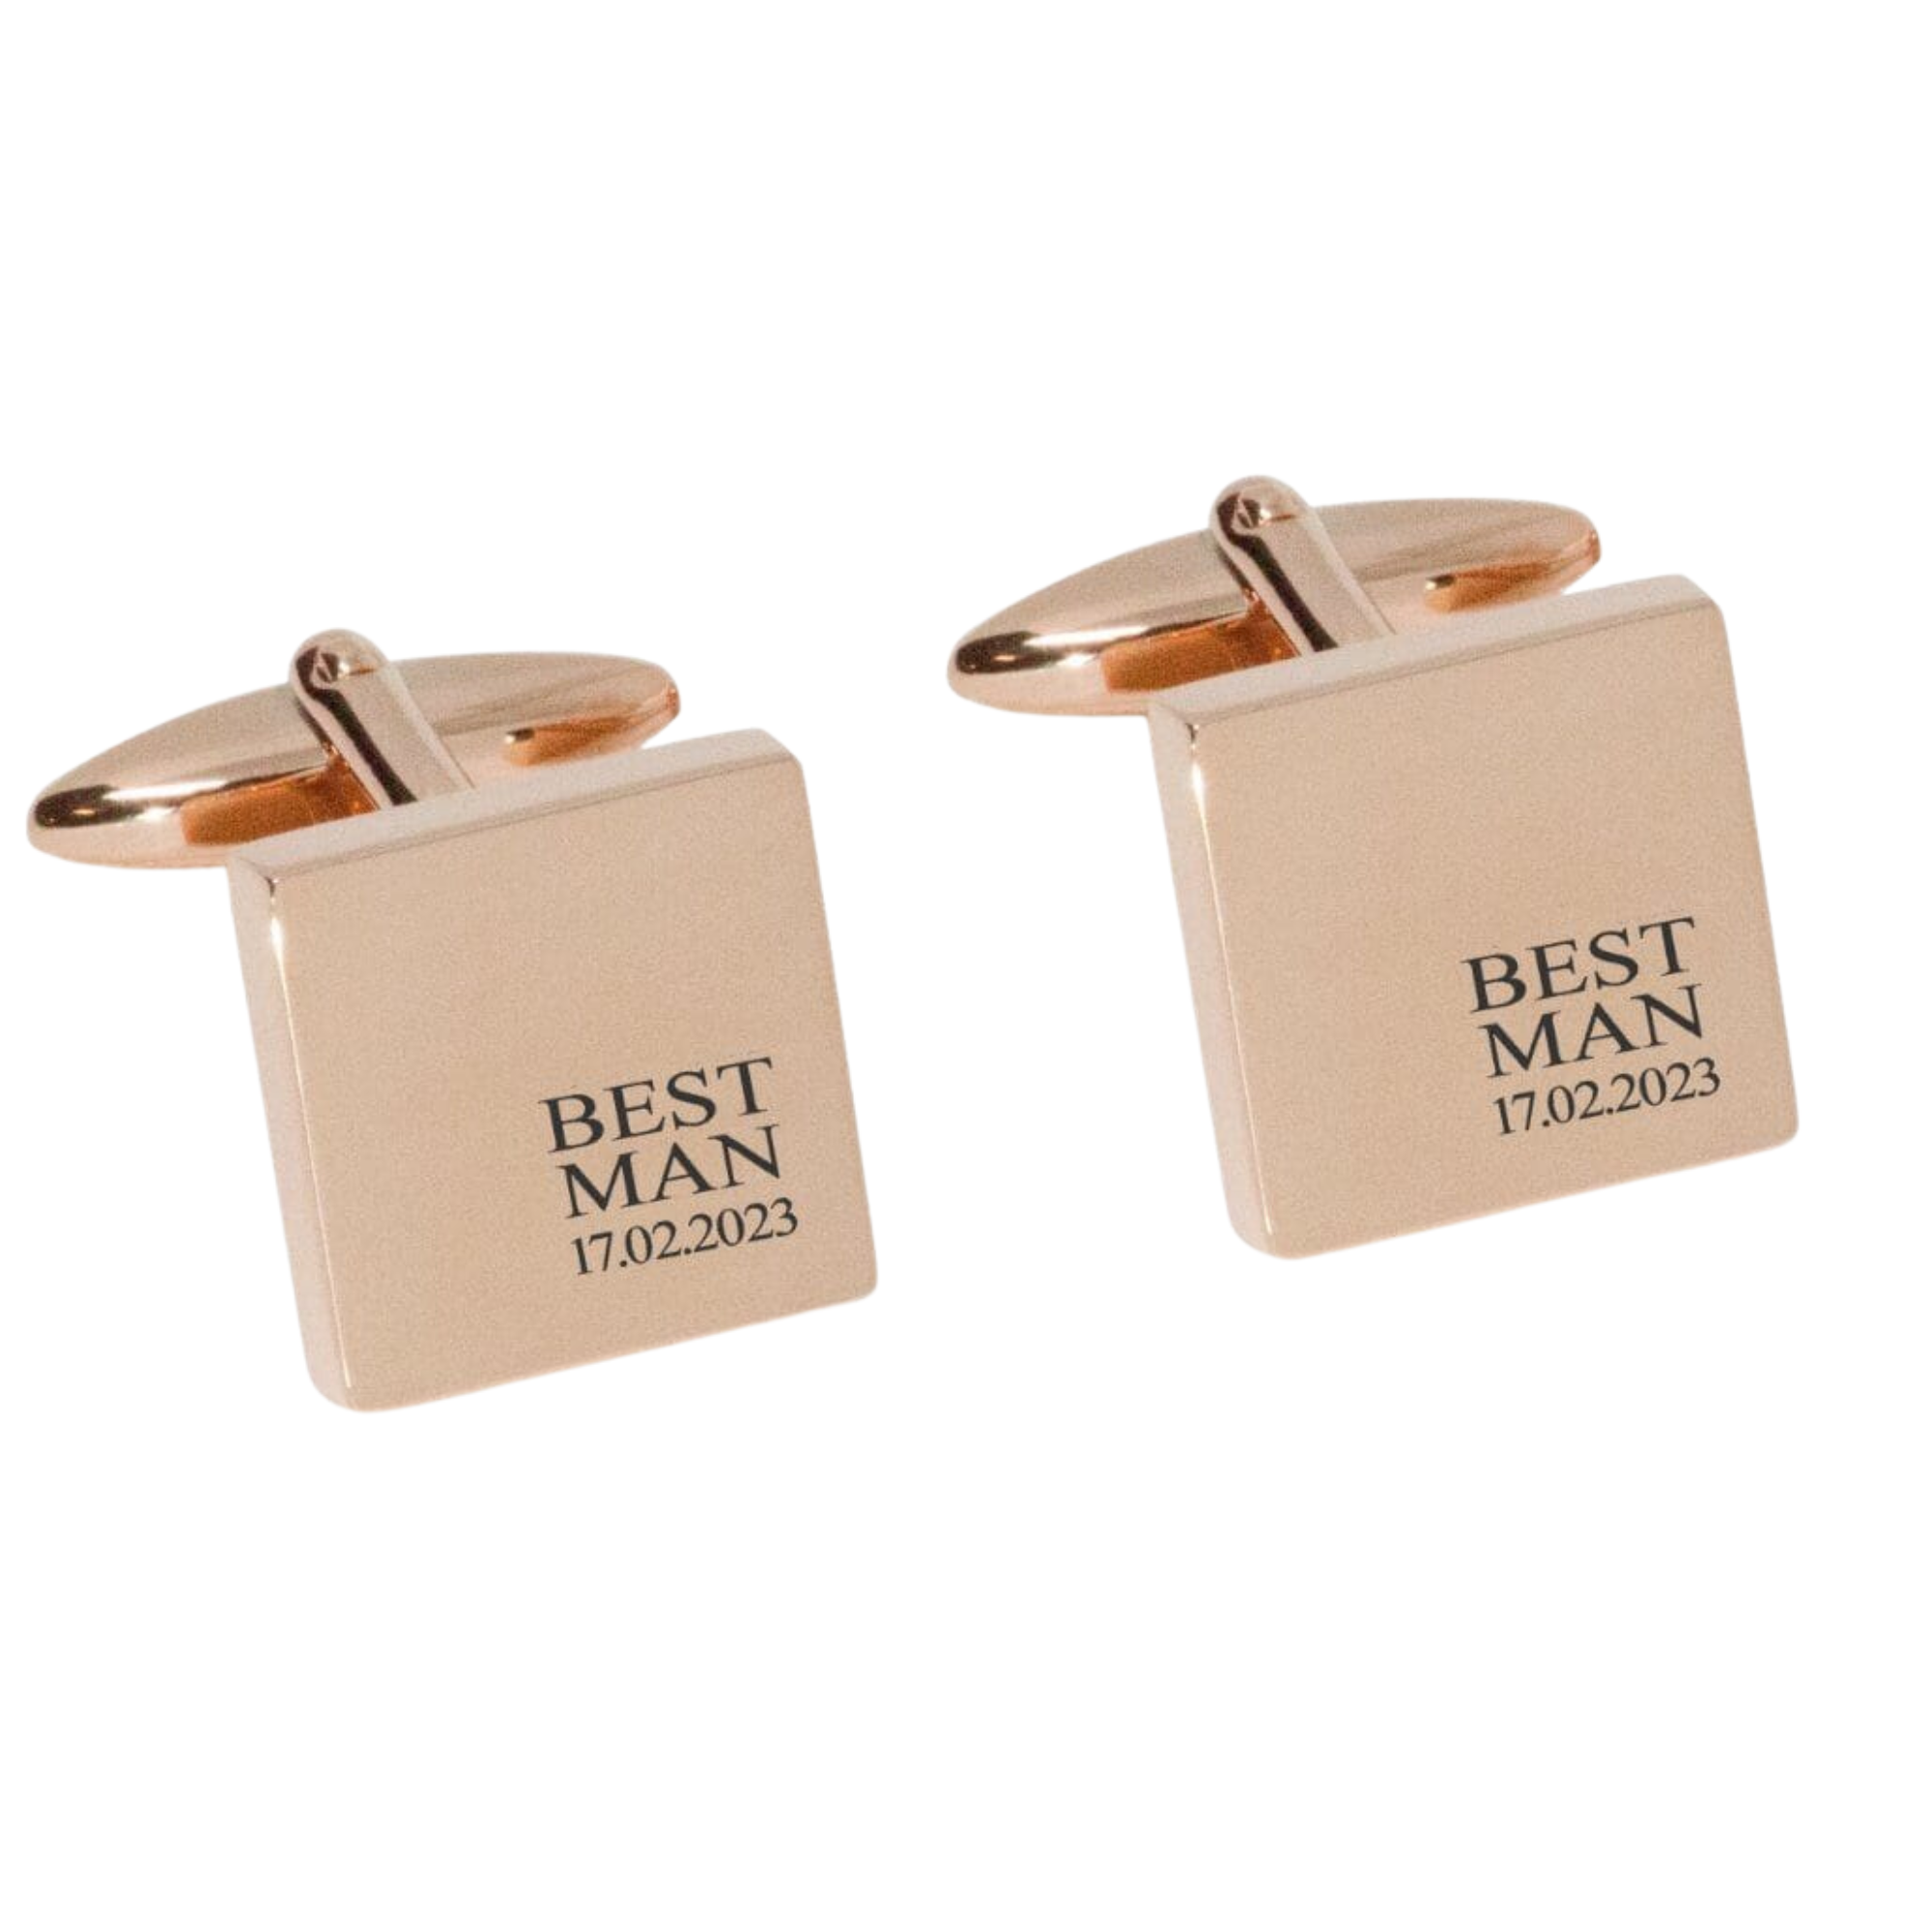 Best Man & Date Engraved Wedding Cufflinks in Rose Gold